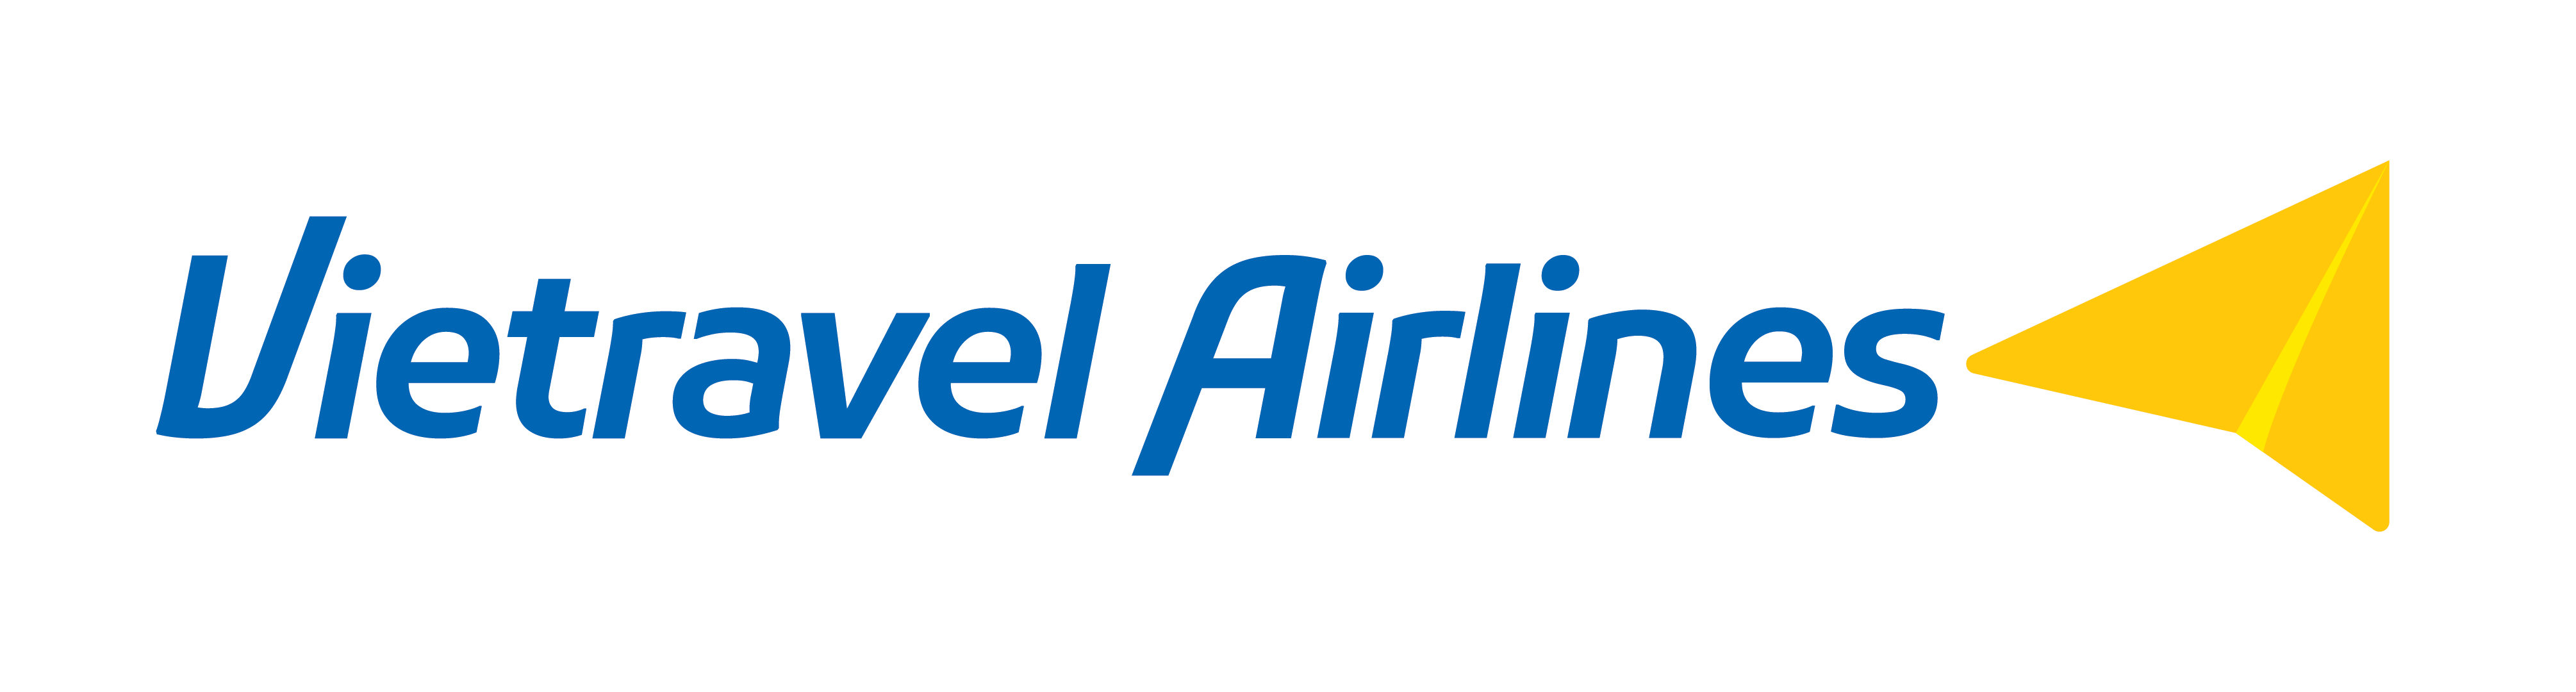 Vietravel Airlines (VU)